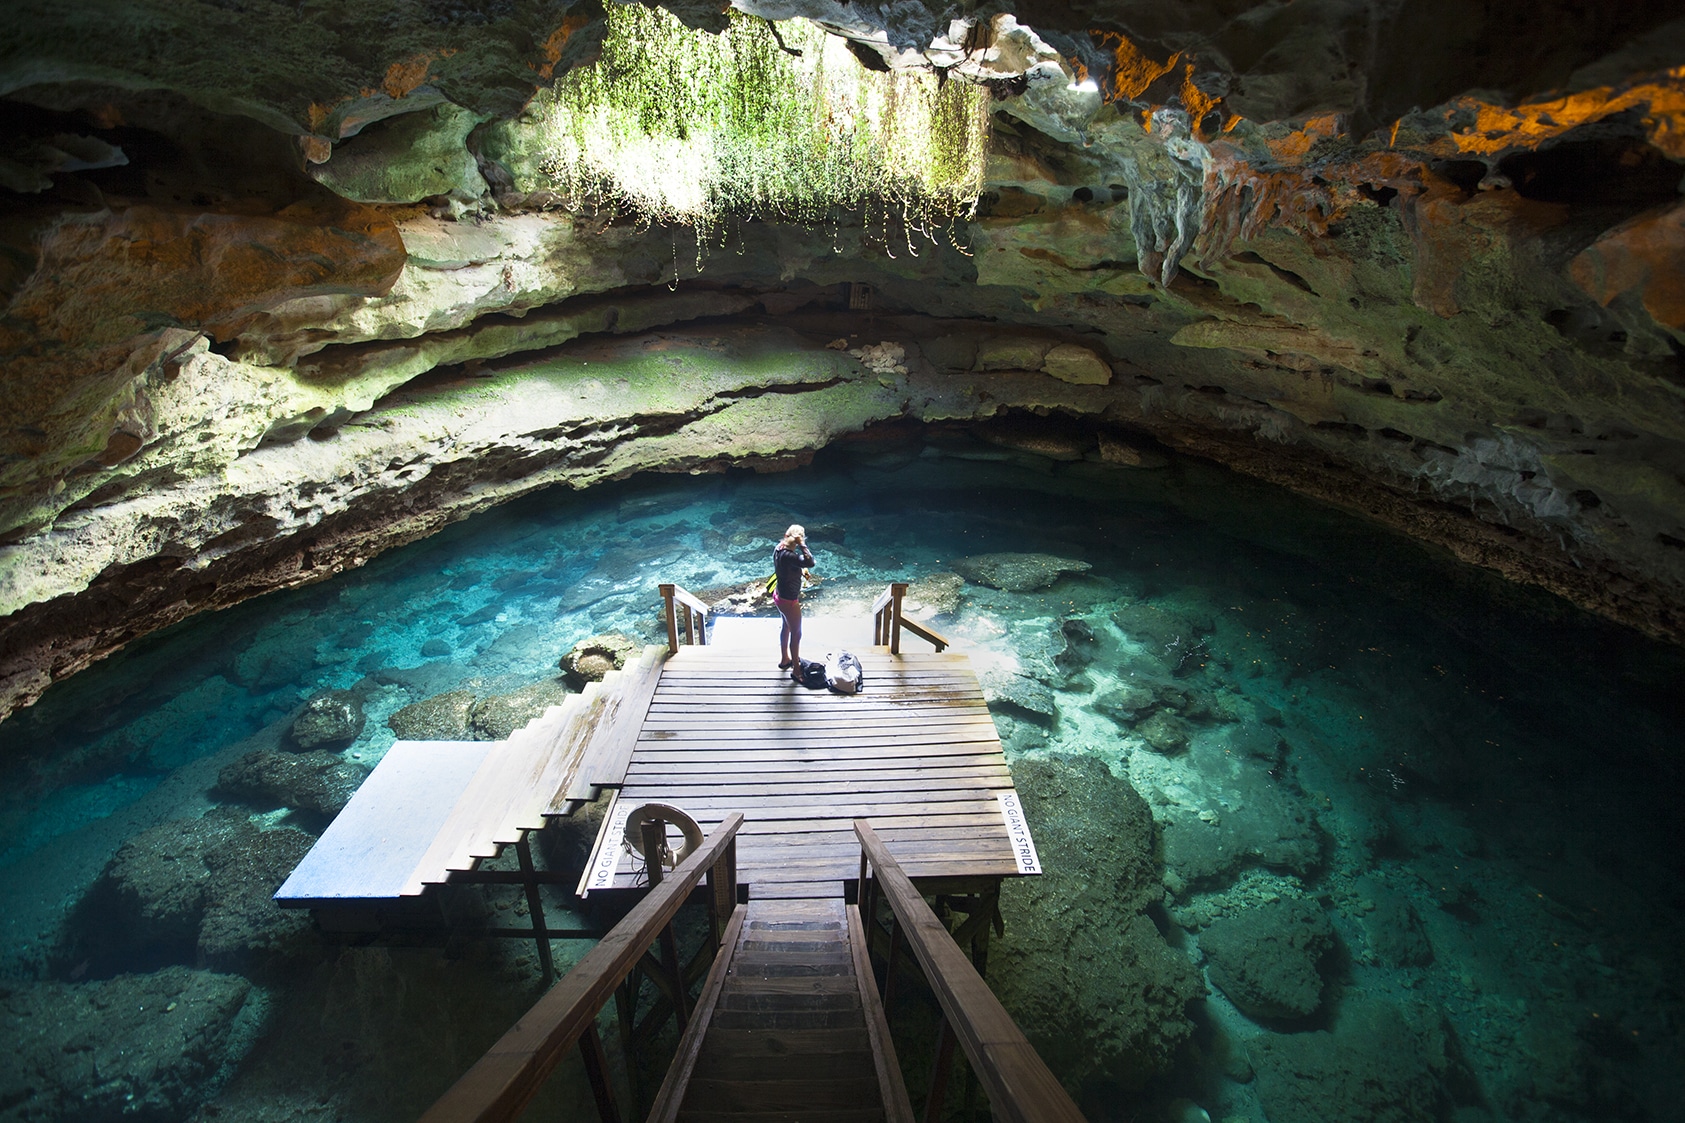 A diver prepares to go under in an underground spring.